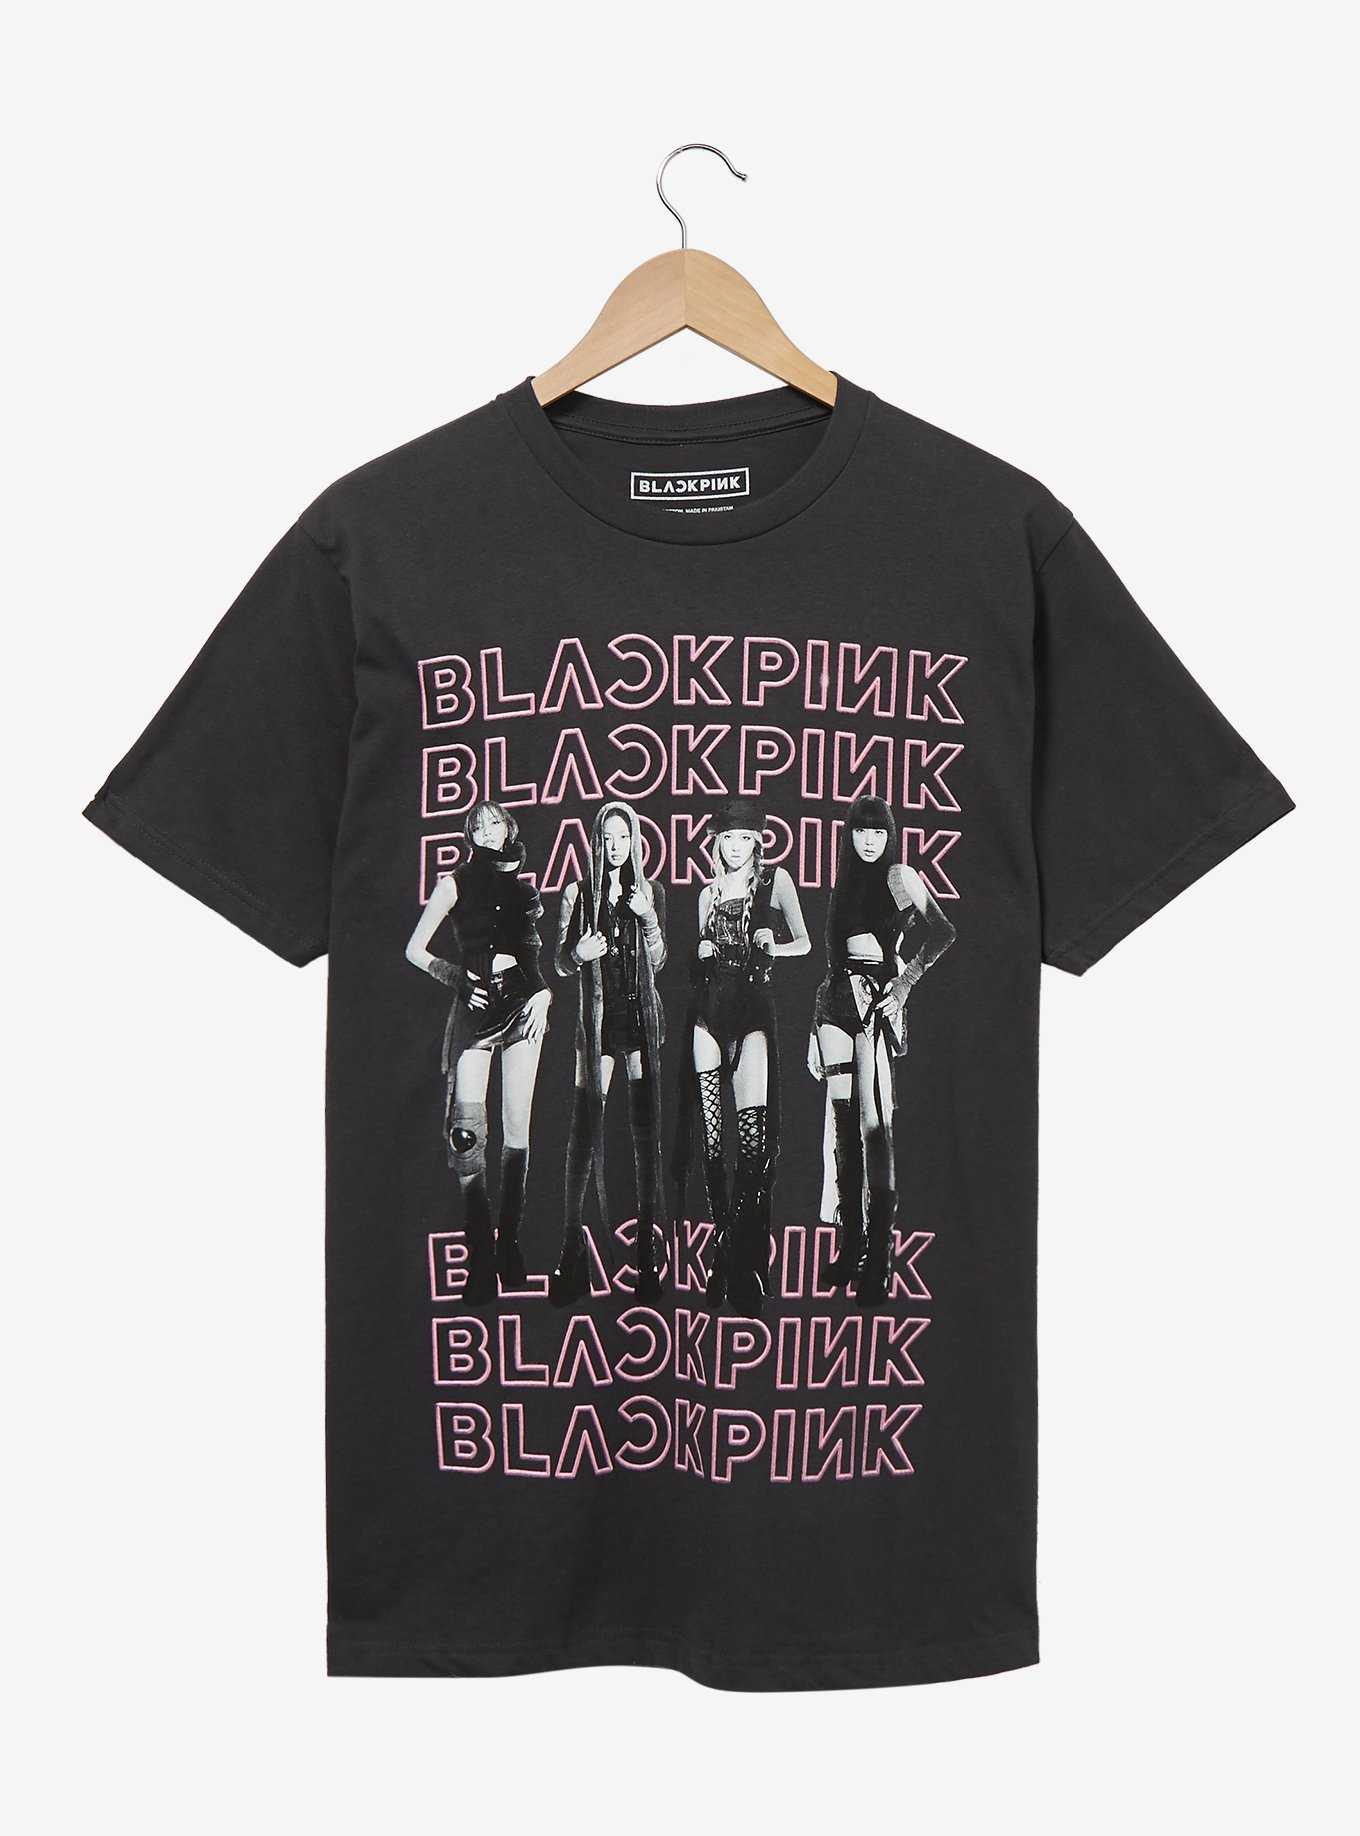 BLACKPINK Group Portrait T-Shirt - BoxLunch Exclusive, , hi-res